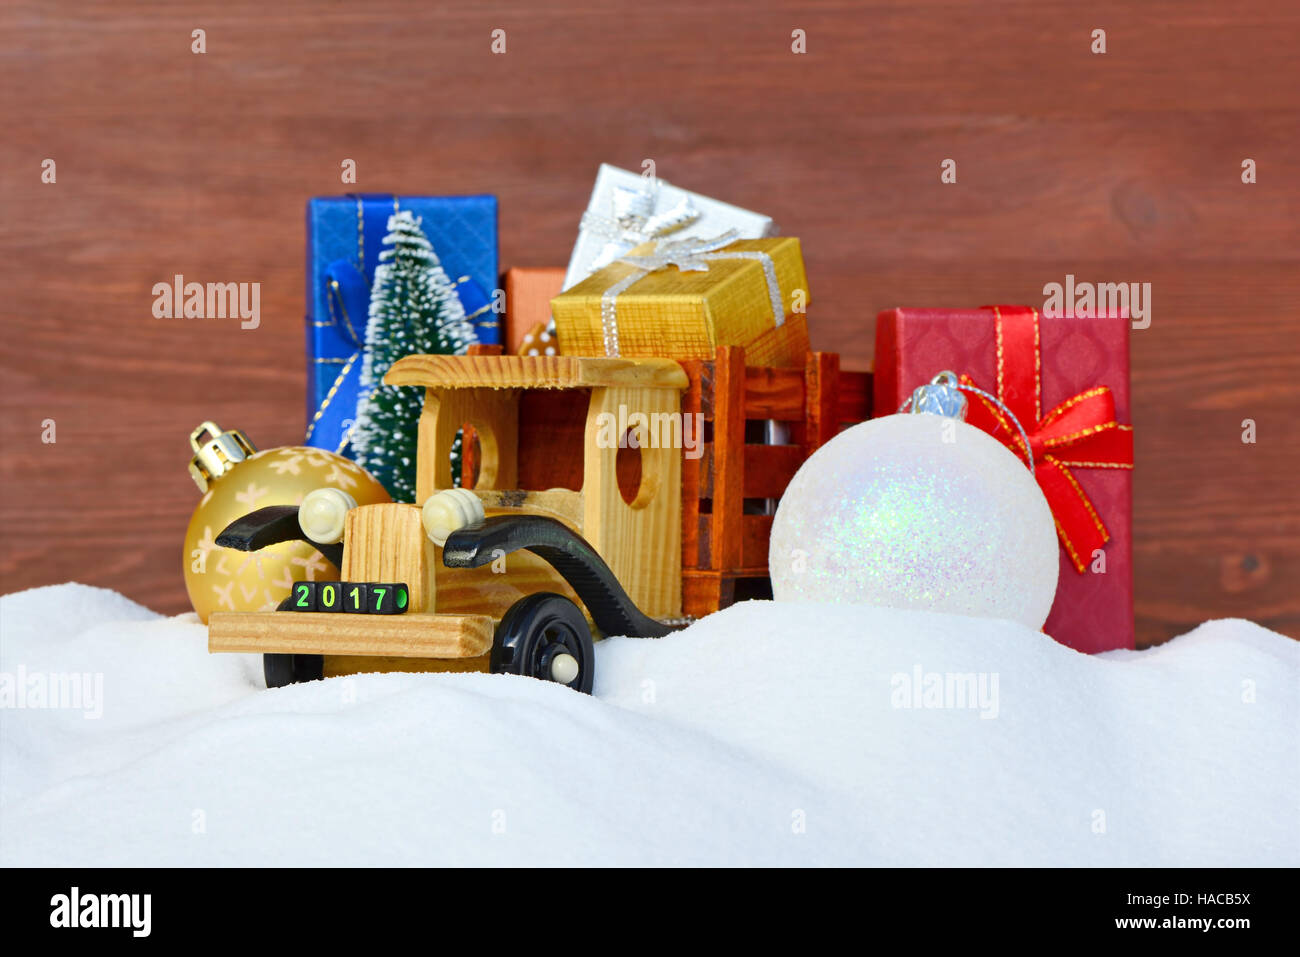 Weihnachten Hintergrund. Spielzeug-LKW mit Geschenken, Neujahr Tanne und Kugeln im Schnee Stockfoto